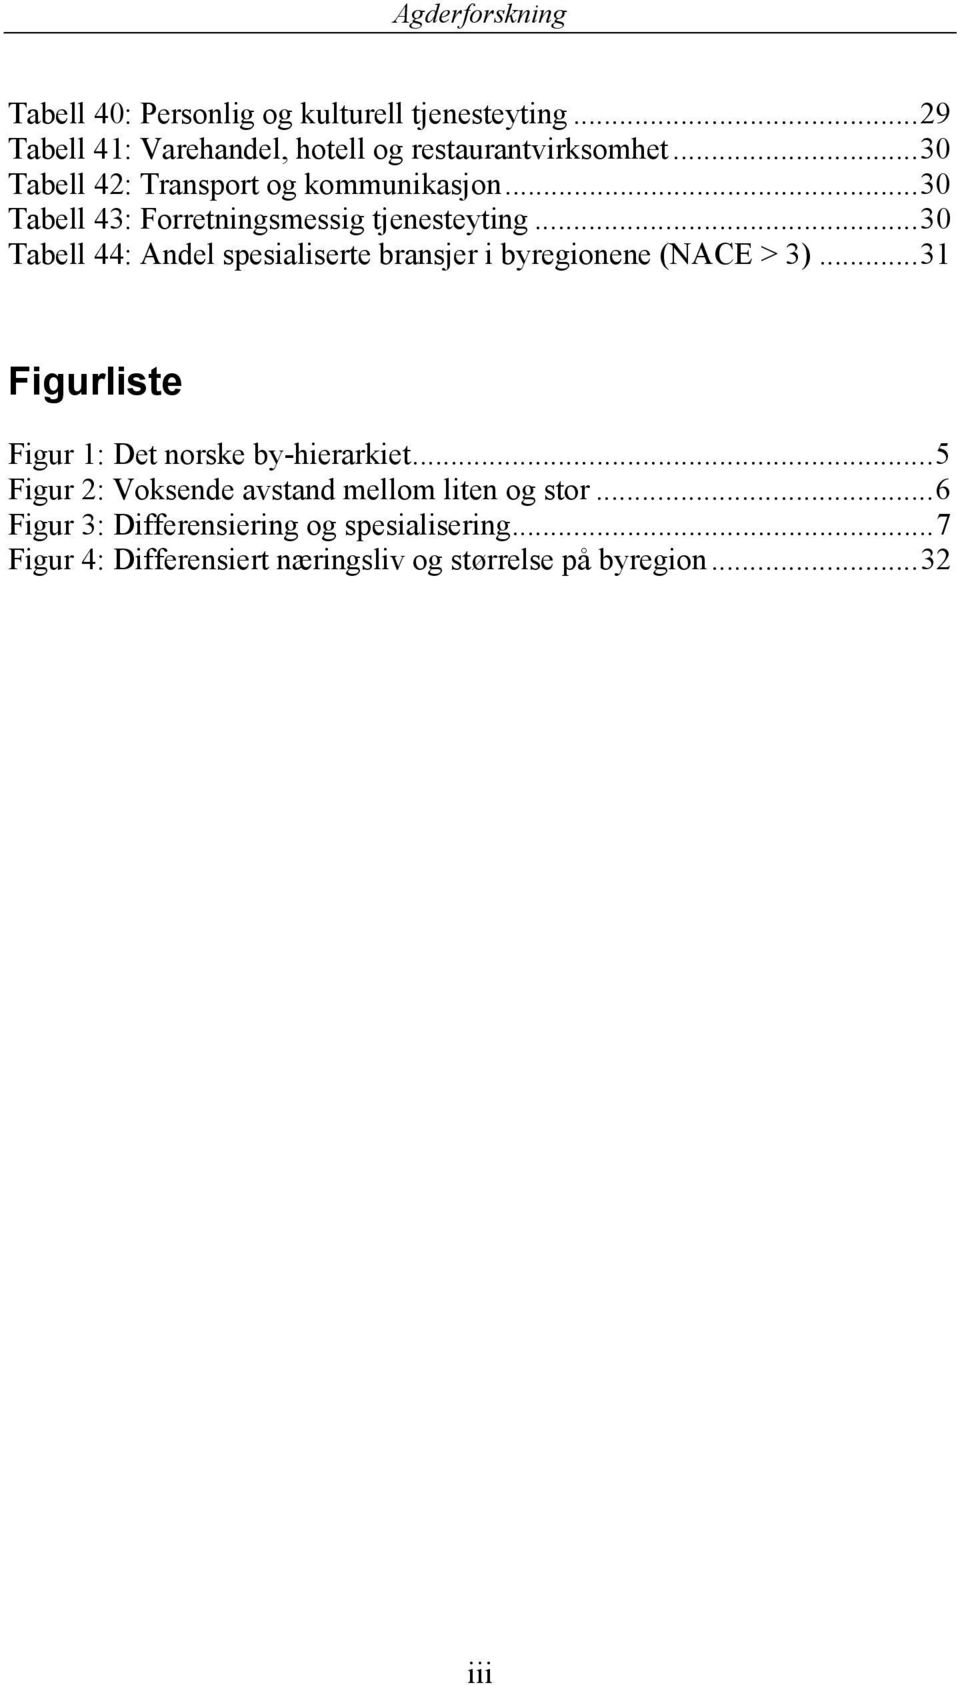 ..30 Tabell 44: Andel spesialiserte bransjer i byregionene (NACE > 3)...31 Figurliste Figur 1: Det norske by-hierarkiet.